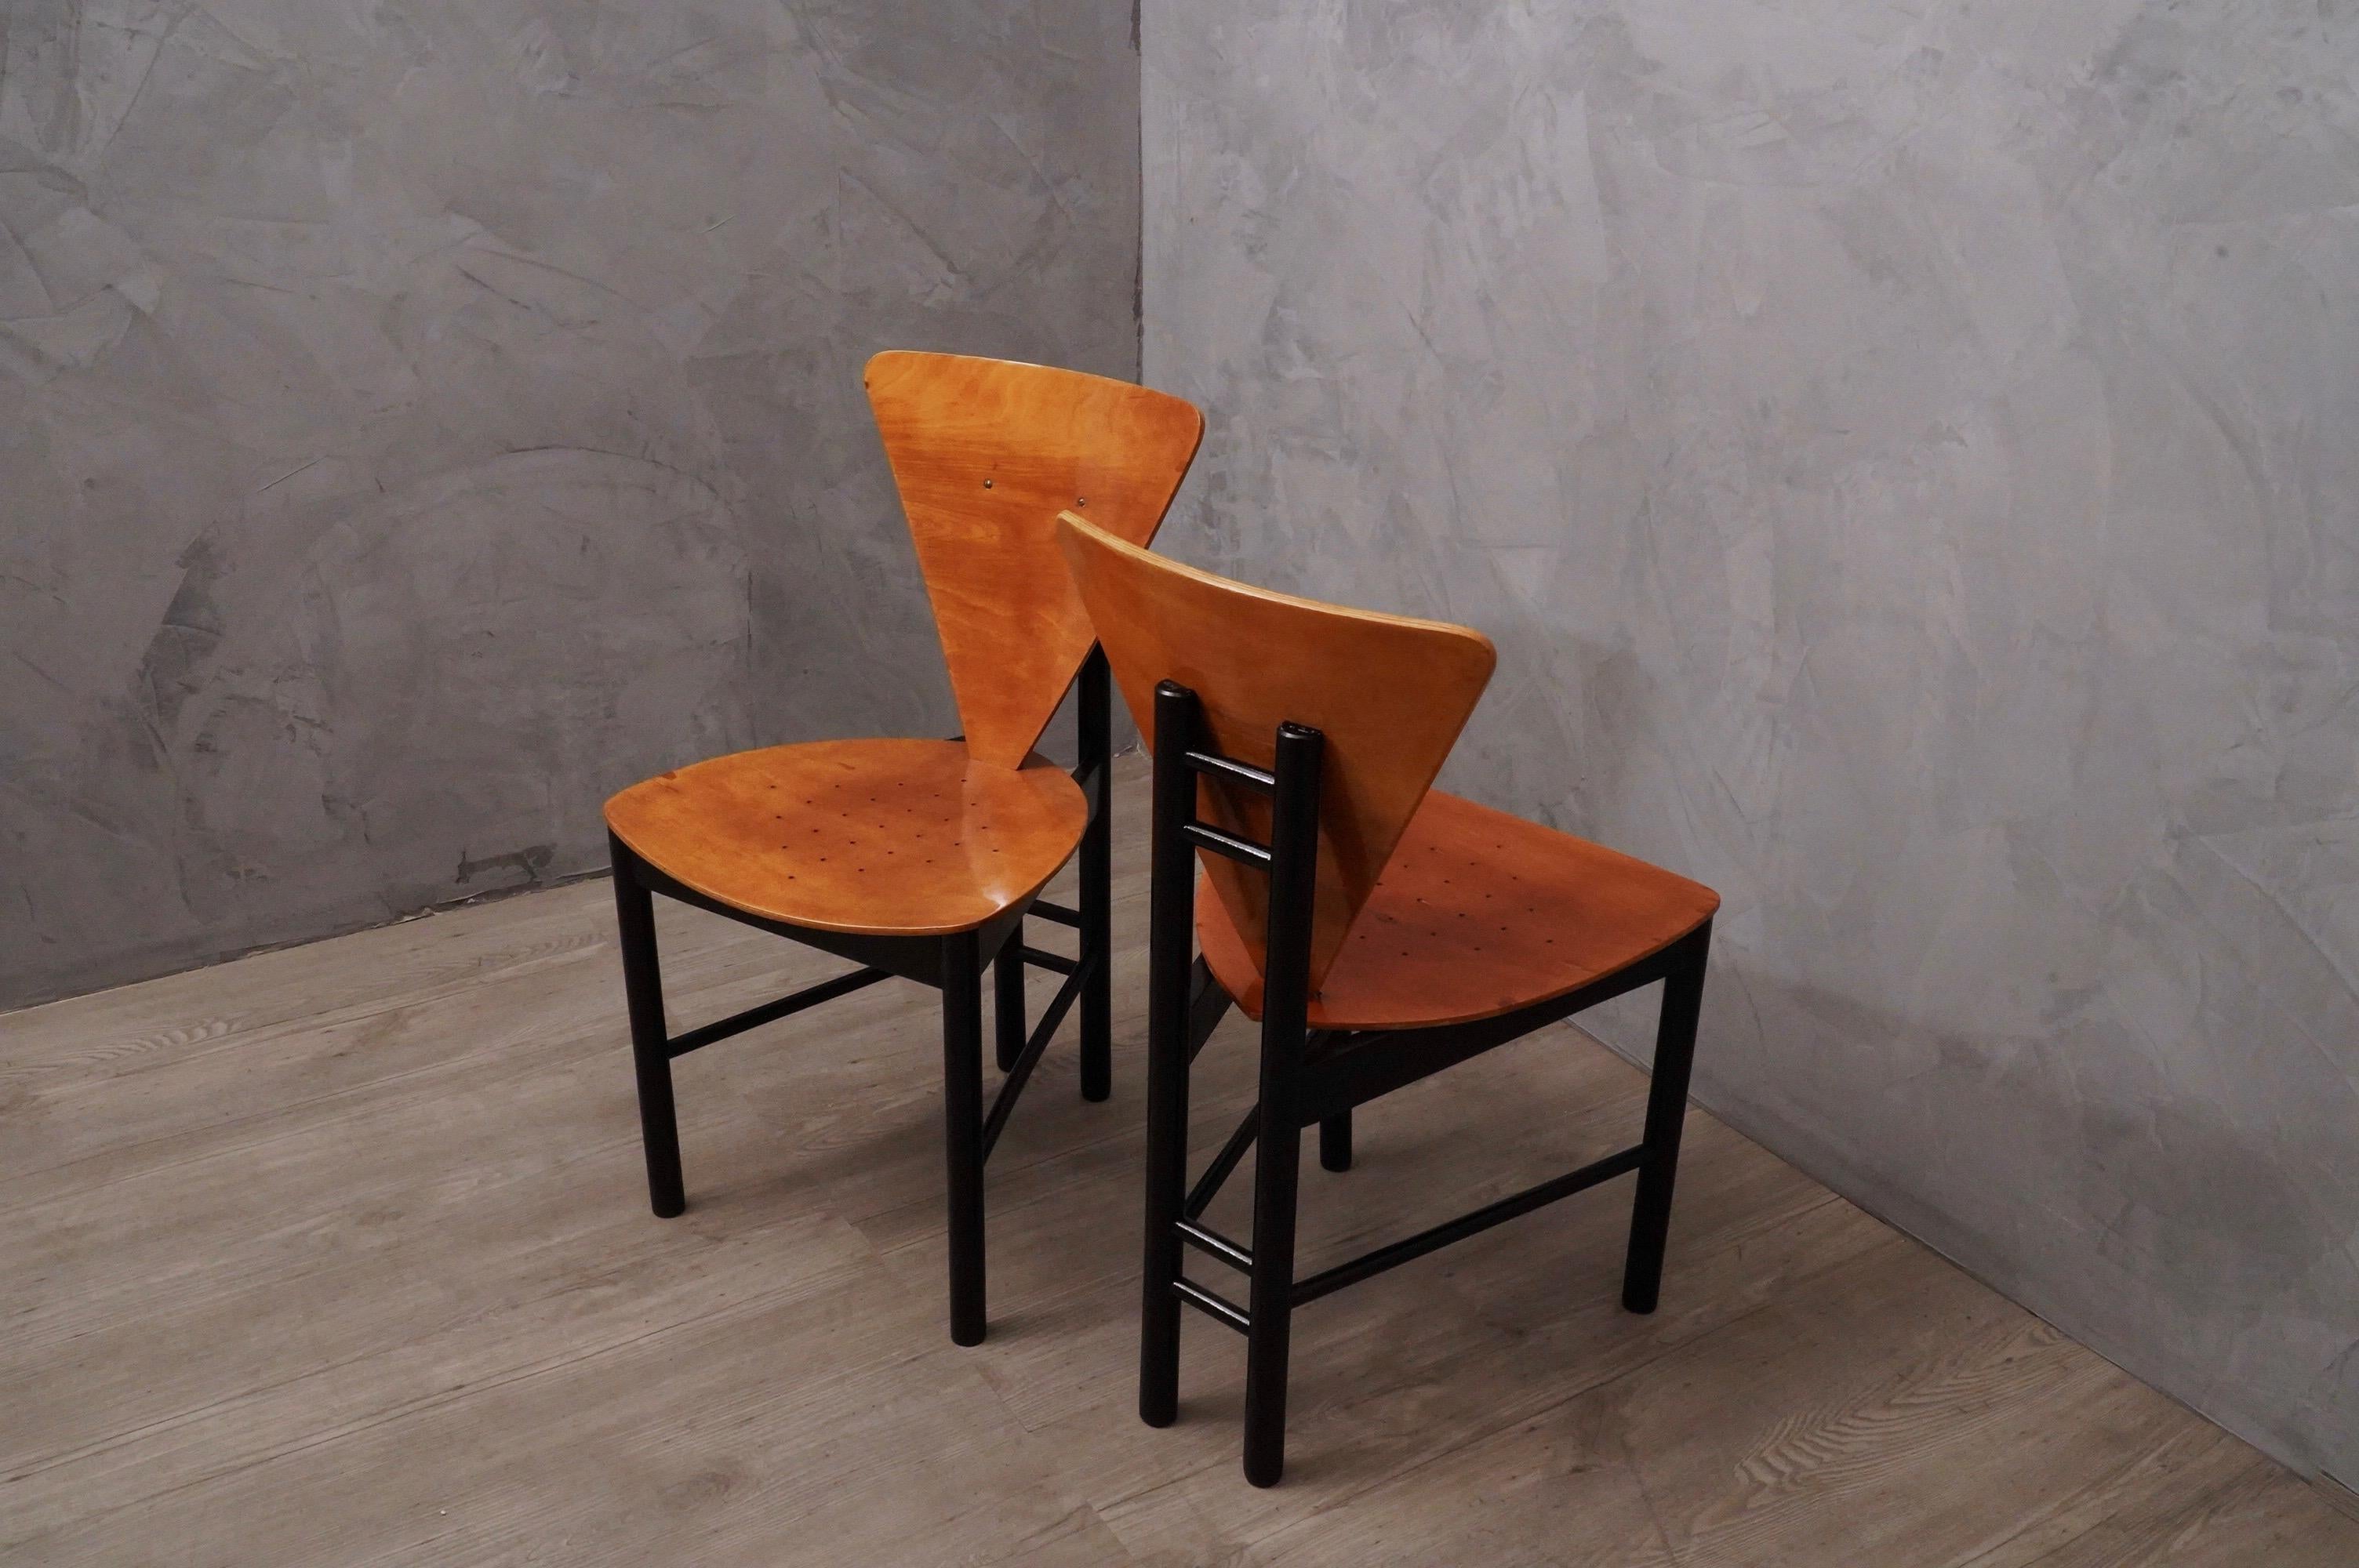 Ein Paar Beistellstühle mit einem sehr starren Stil und überraschendem Design, im charakteristischen italienischen Stil dieser Zeit.

Das Stuhlpaar hat eine Struktur aus lackiertem Buchenholz mit schwarzem Schellack, während Sitz und Rückenlehne mit